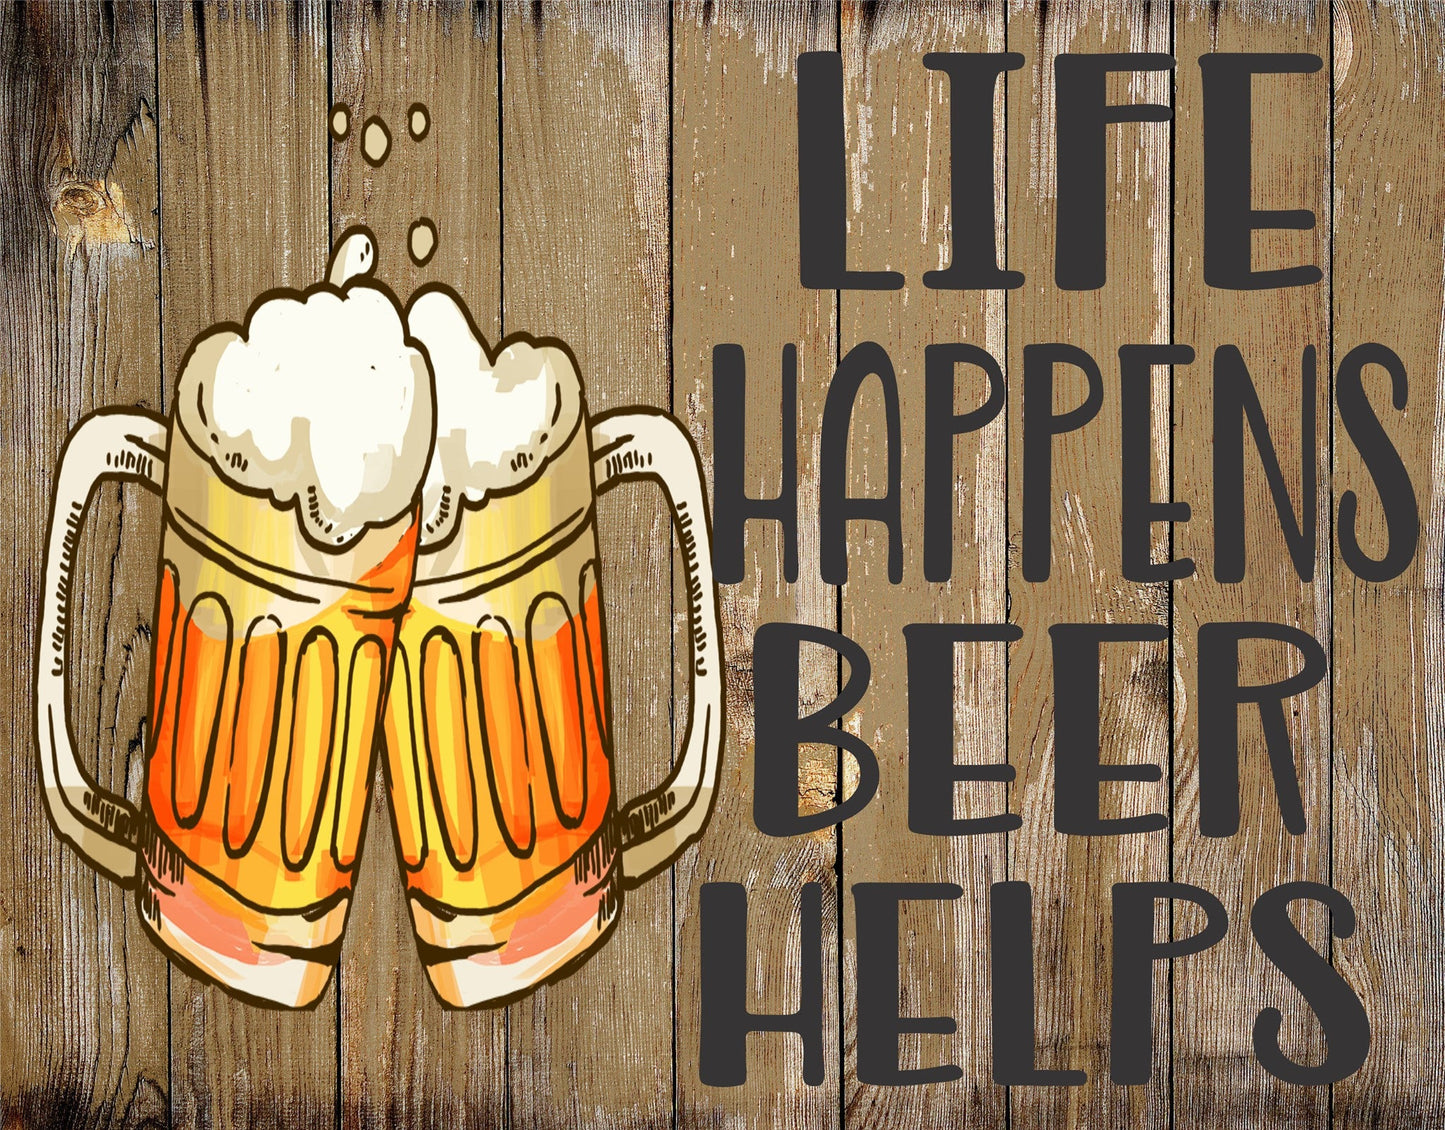 Life Happens Beer Helps